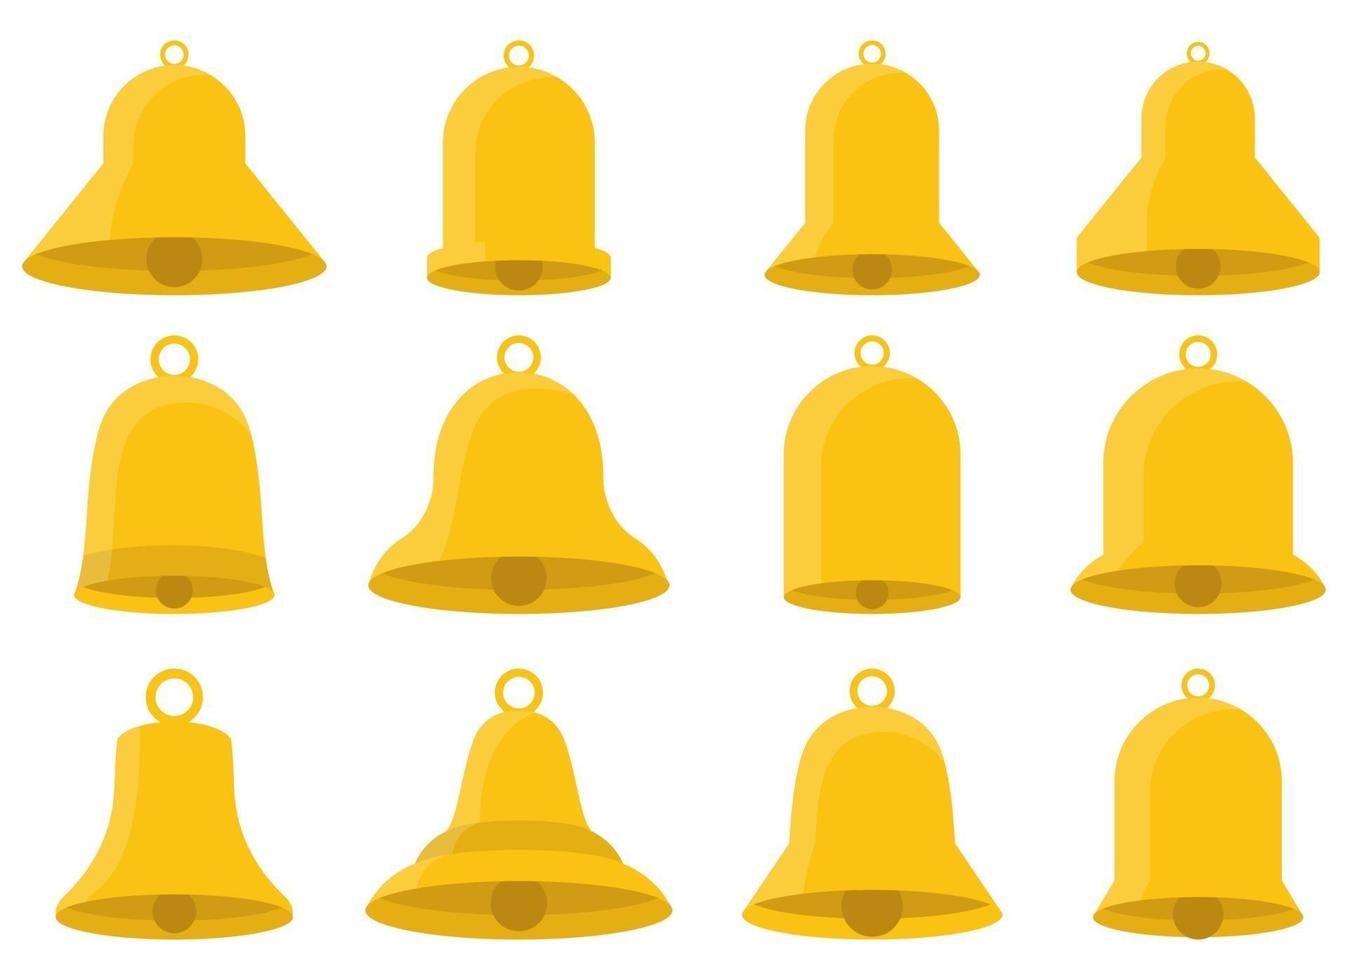 Golden bell vector design illustration set isolated on white background